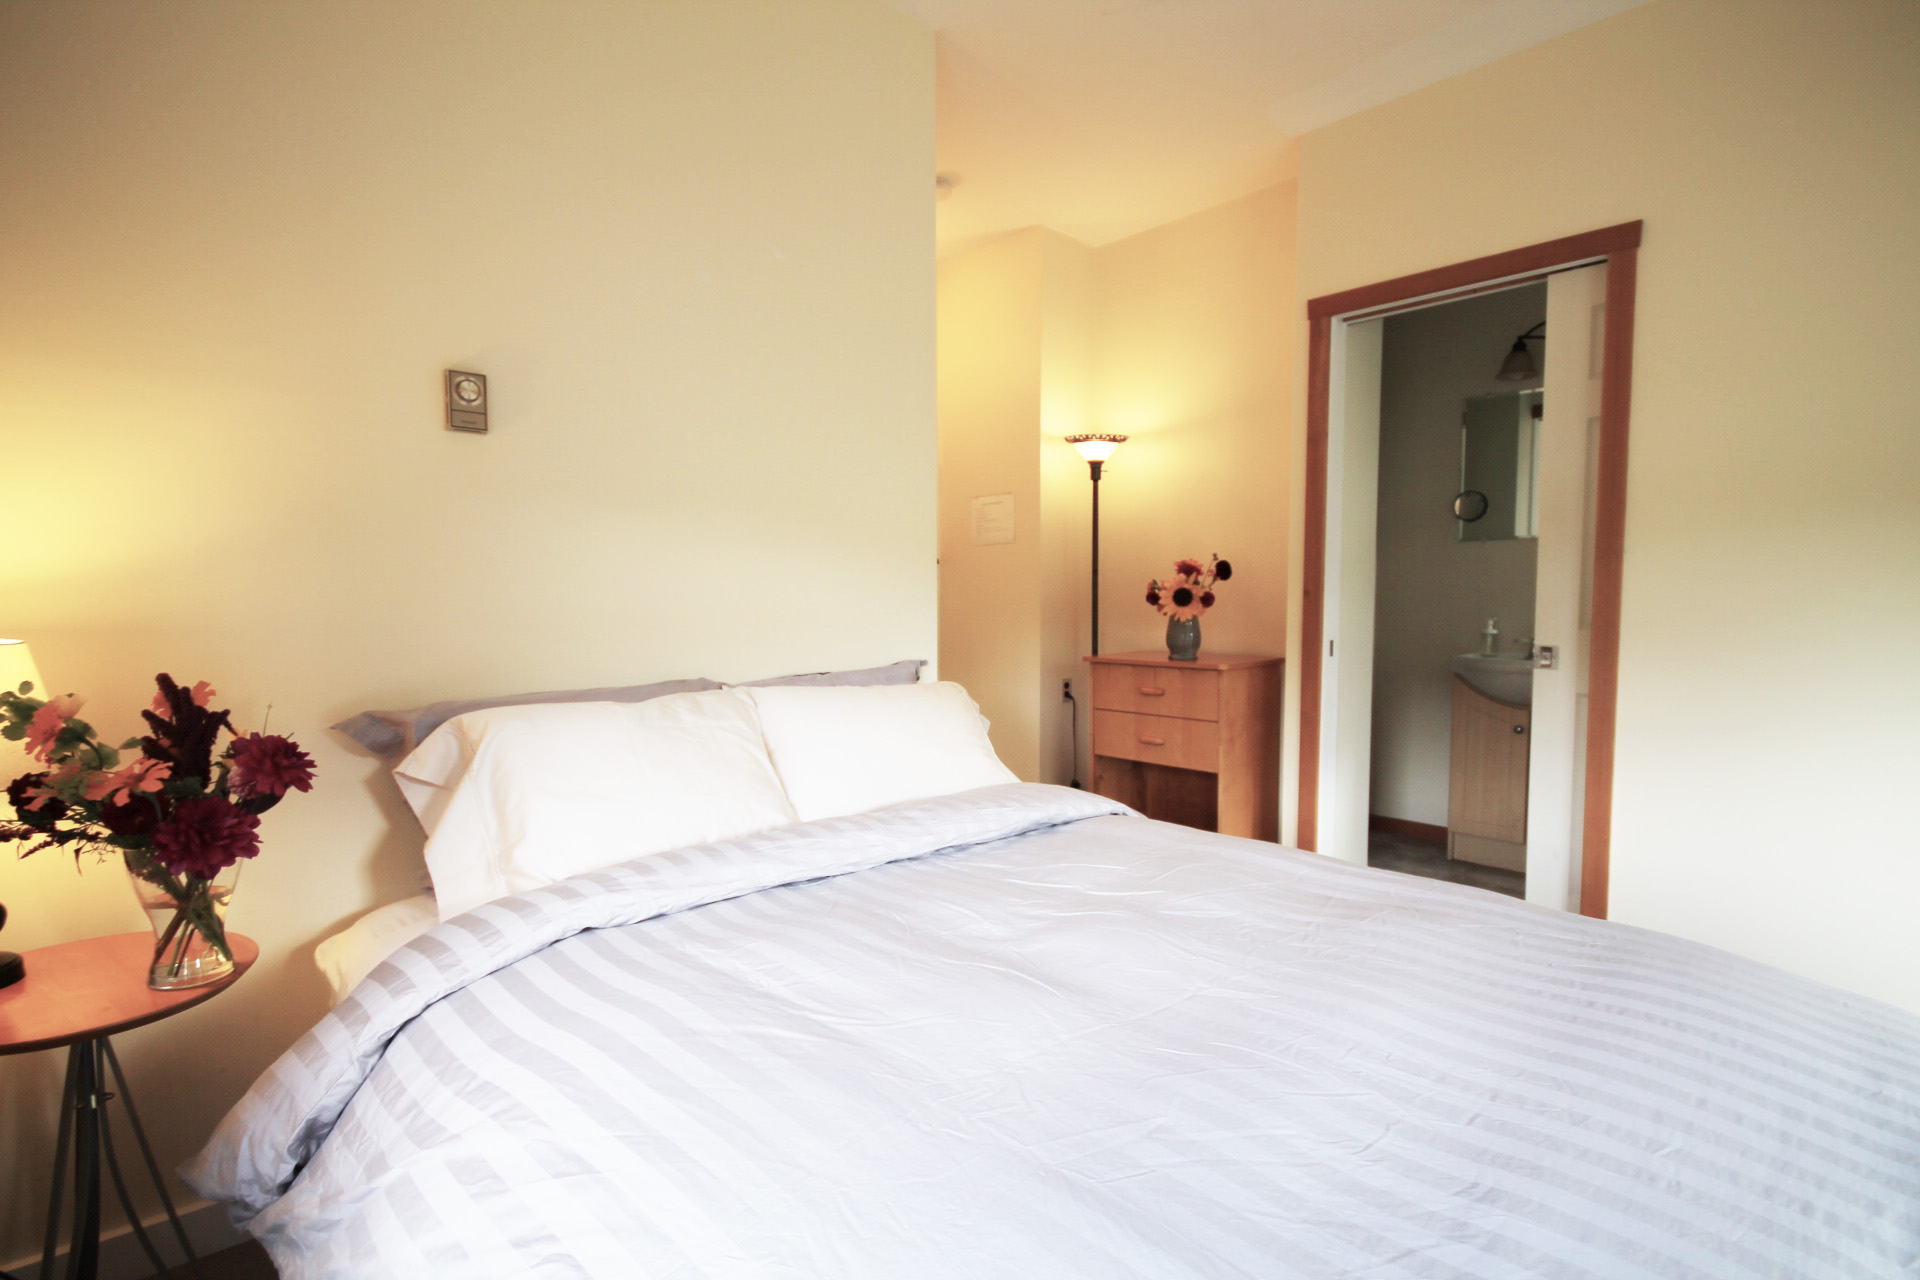 Room 108 - double bed with en suite